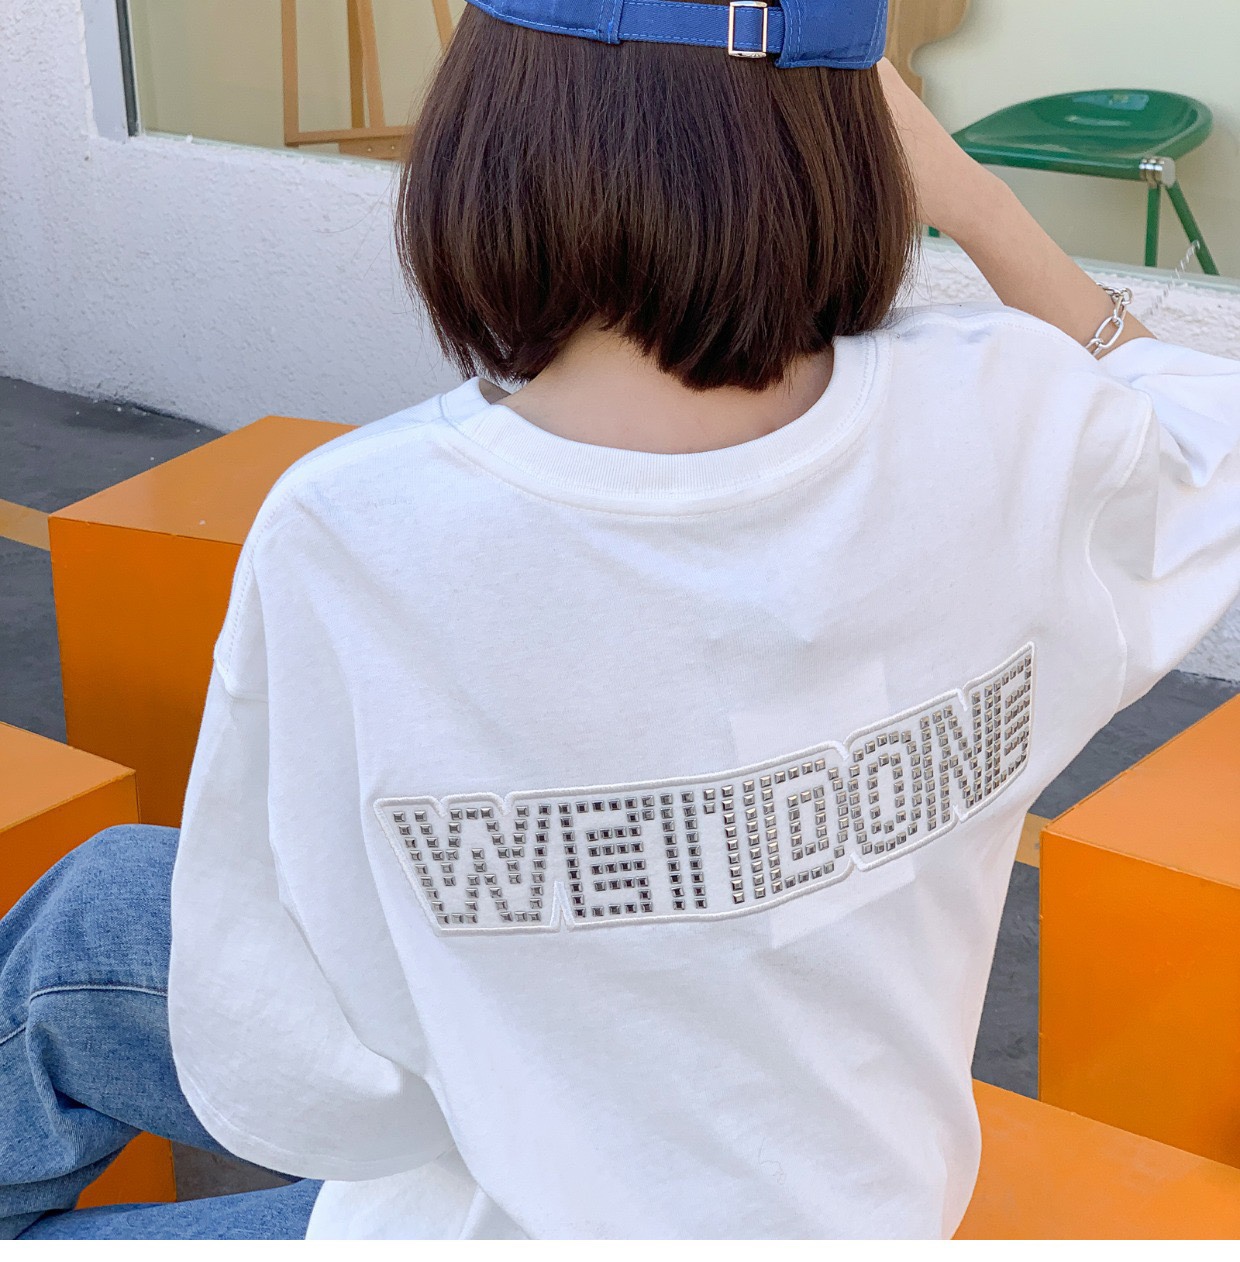 WE11DONE ウェルダン tシャツ偽物 トップス 純綿tシャツ リベットロゴ ファッション 品質保証 ホワイト_2